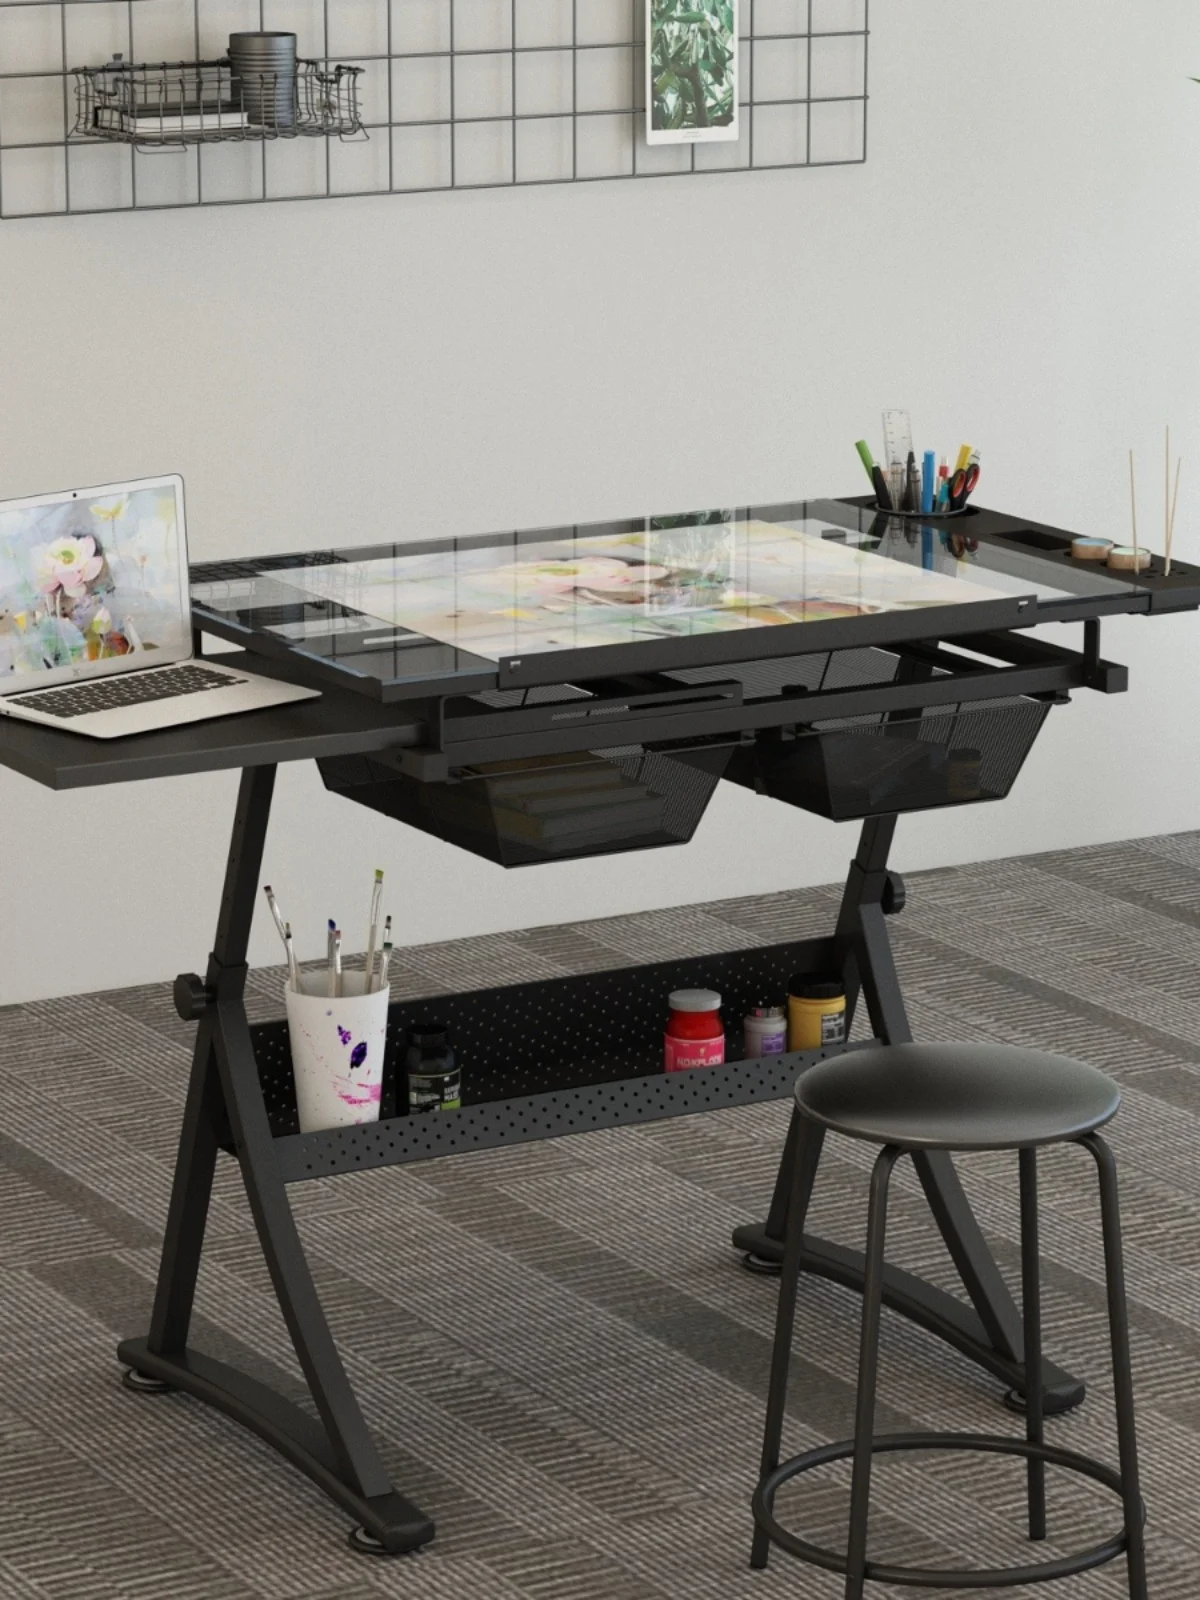 Tavolo da disegno in vetro sollevamento tavolo da pittura regolabile in angolazione scrivania pittura a olio pittura artistica Design architetto